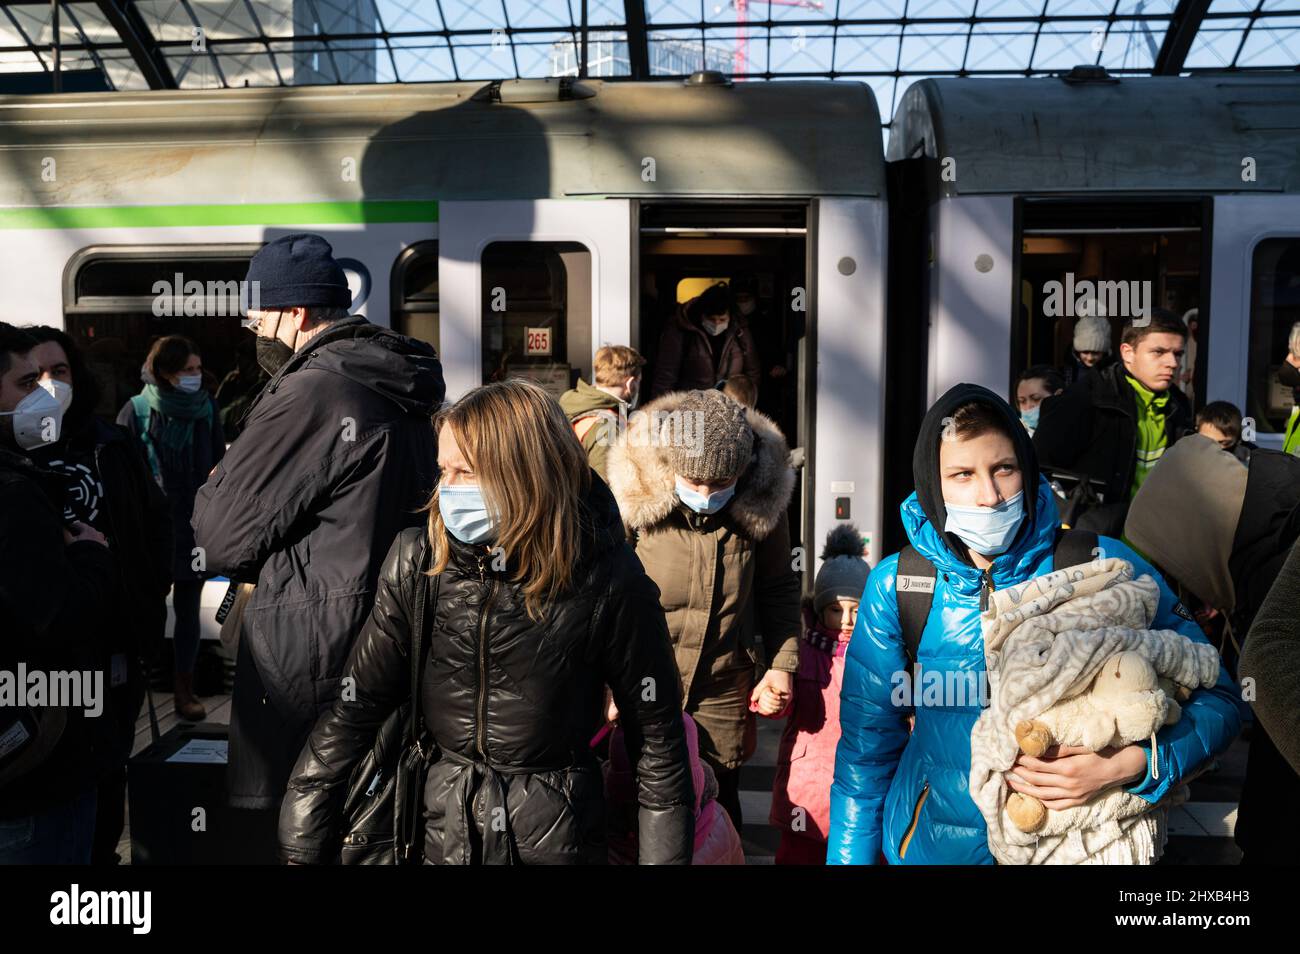 10.03.2022, Berlino, Germania, Europa - i rifugiati di guerra provenienti dall'Ucraina arrivano in treno da Varsavia alla stazione centrale di Berlino dopo che sono fuggiti dalla guerra. Foto Stock